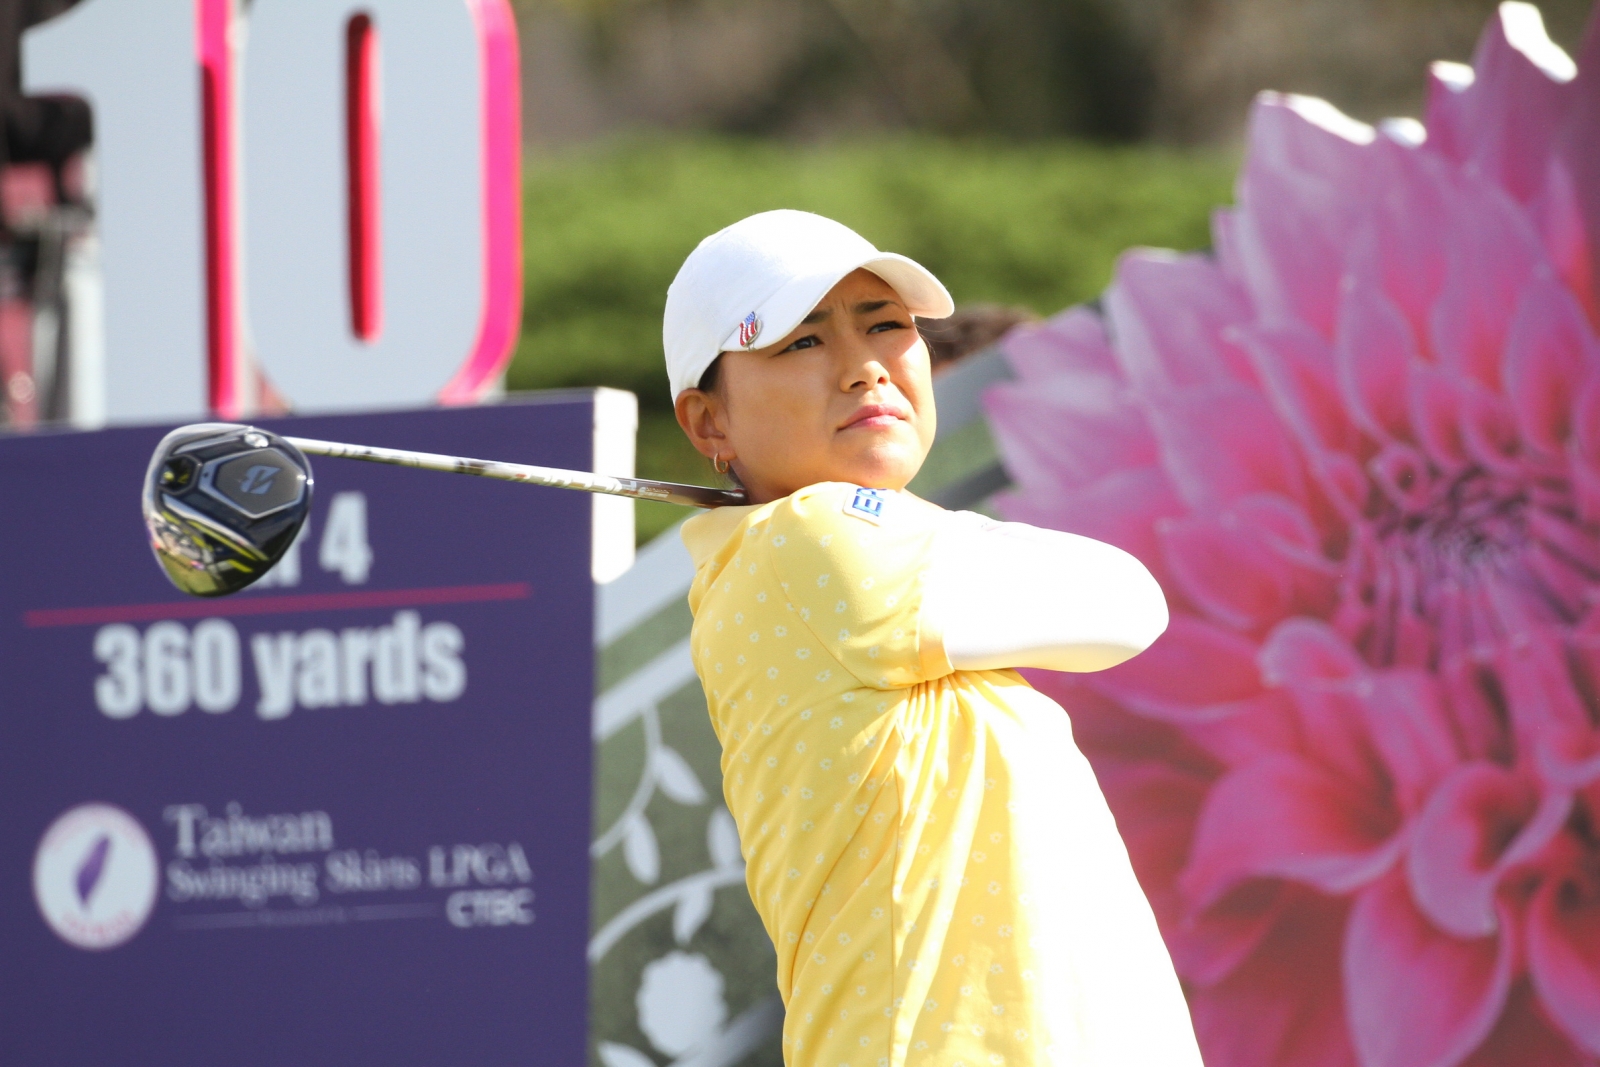 現年34歲的橫峰櫻是這次參賽的二位日籍球員之一，她曾是2009年日巡賽賞金王，生涯累積獎金排名第五，現轉往LPGA發展。